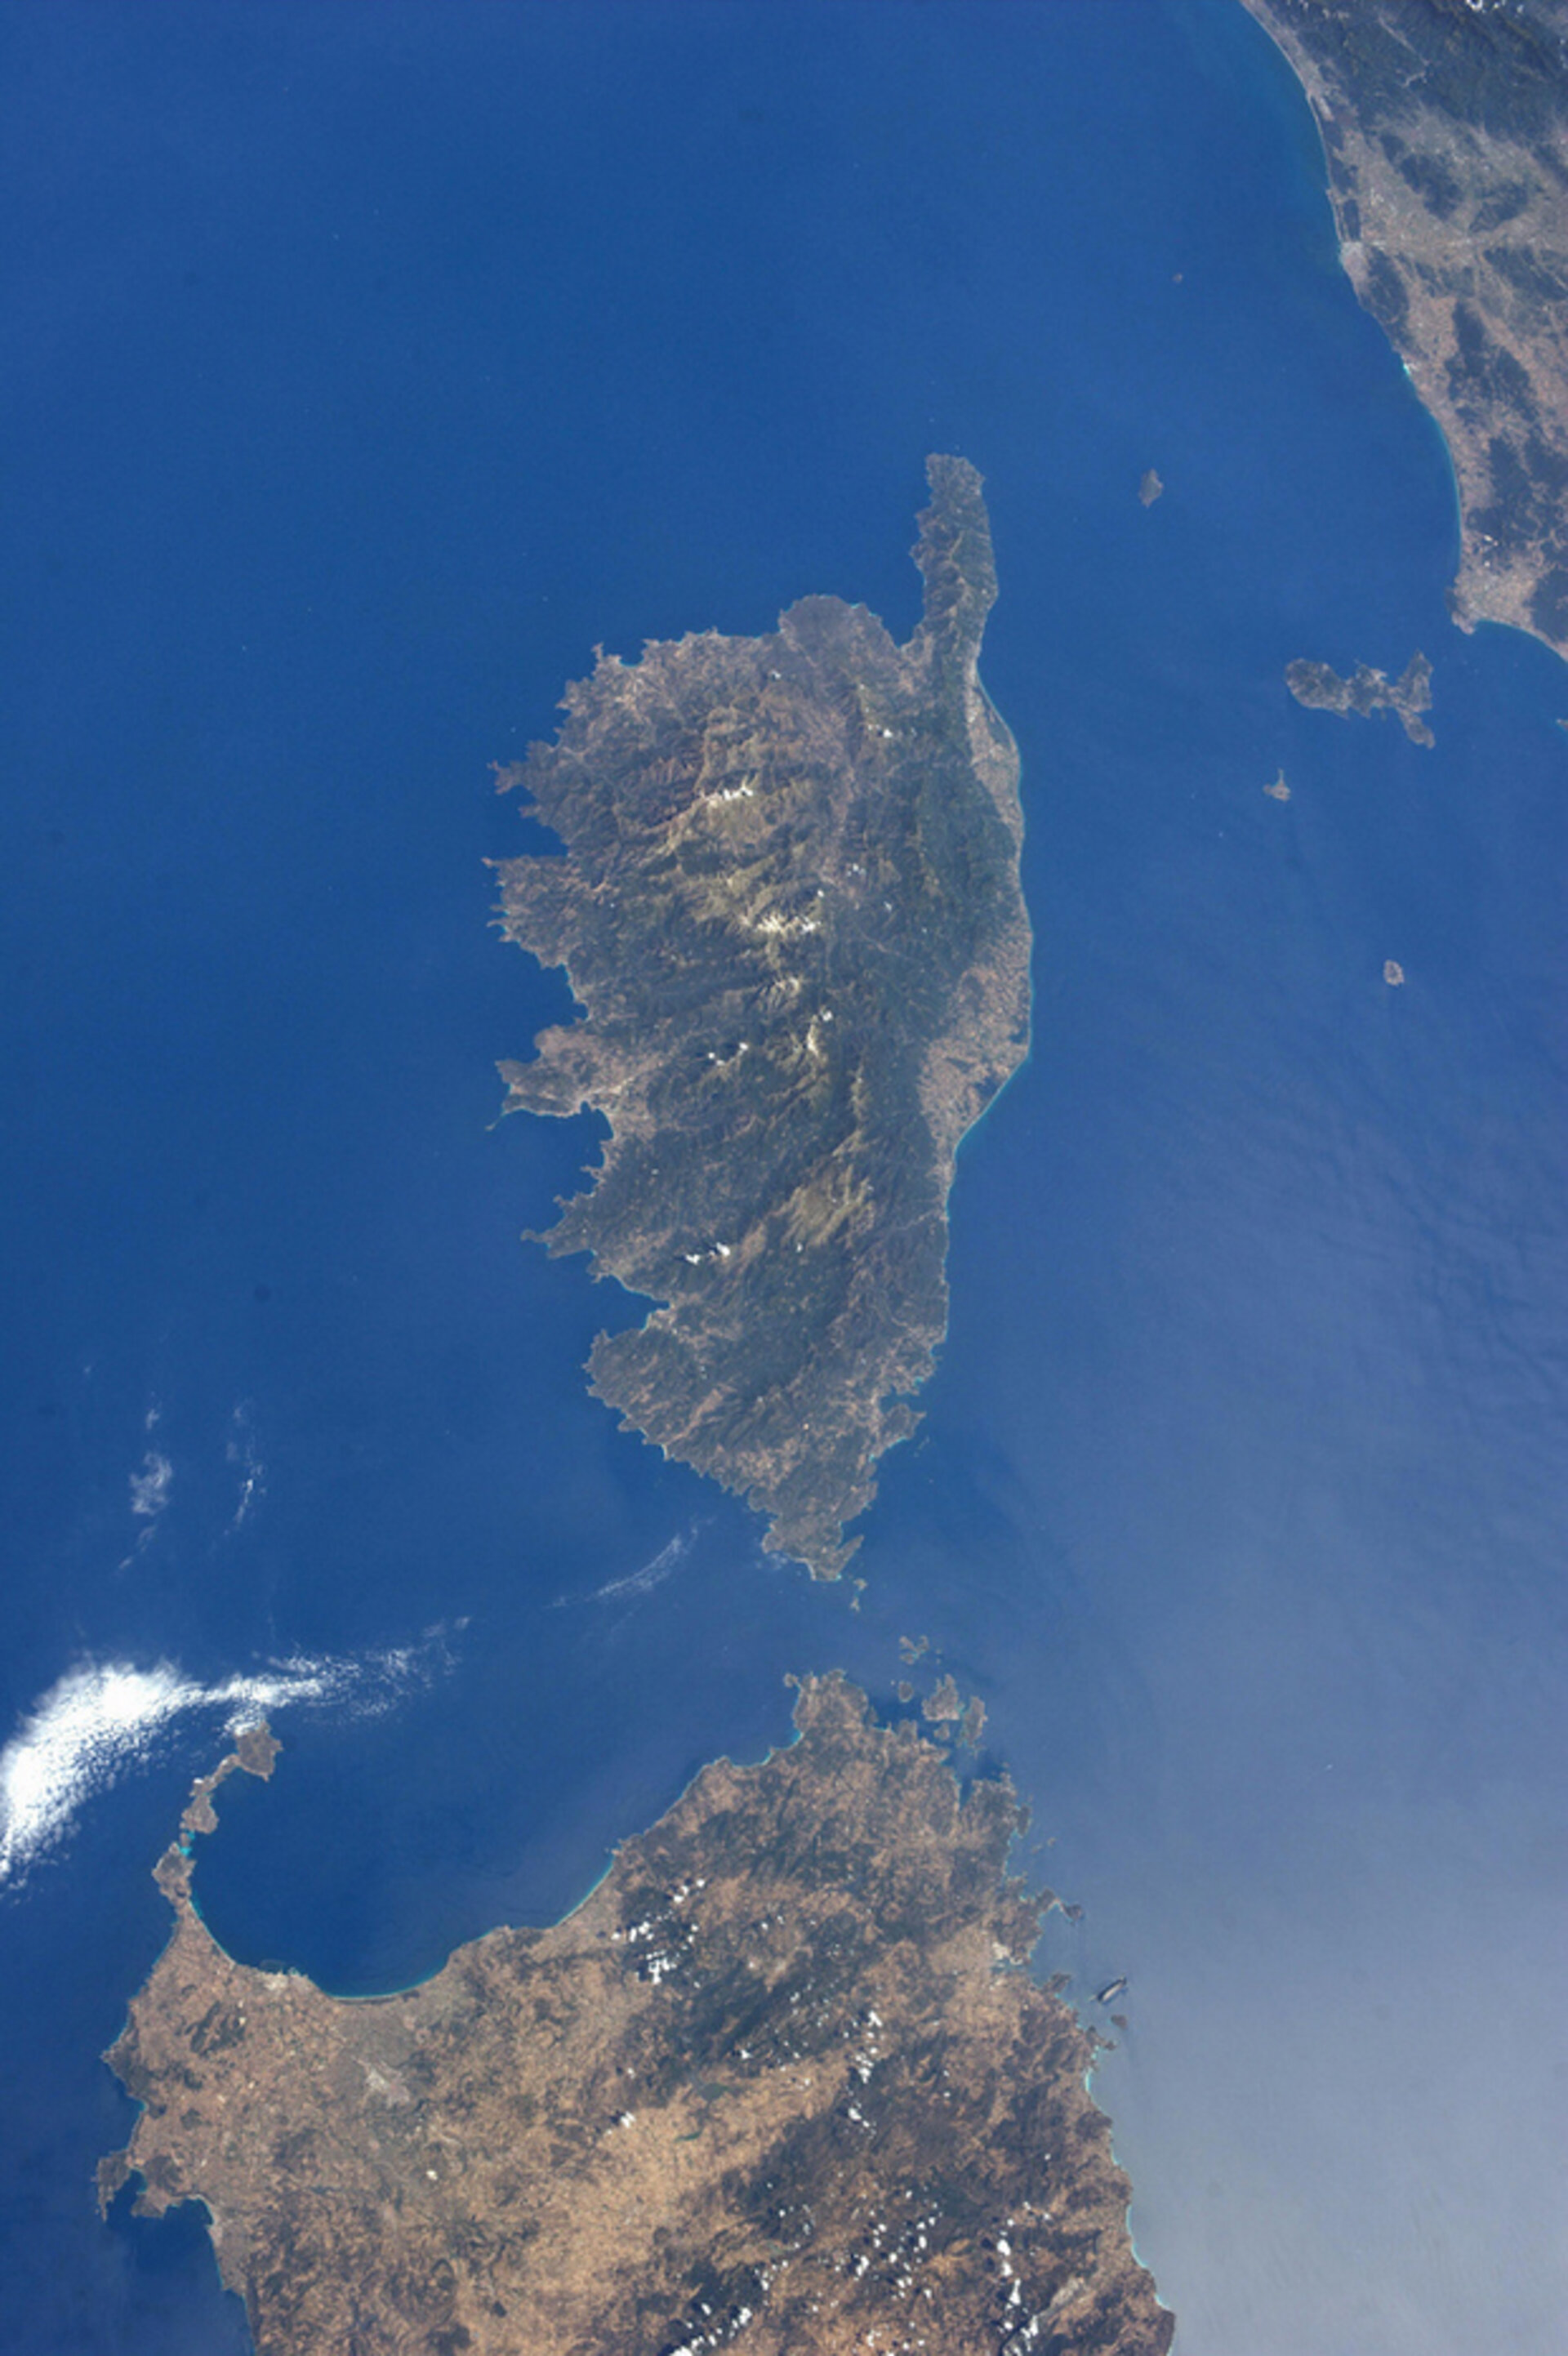 La Corse vue depuis la Station spatiale internationale